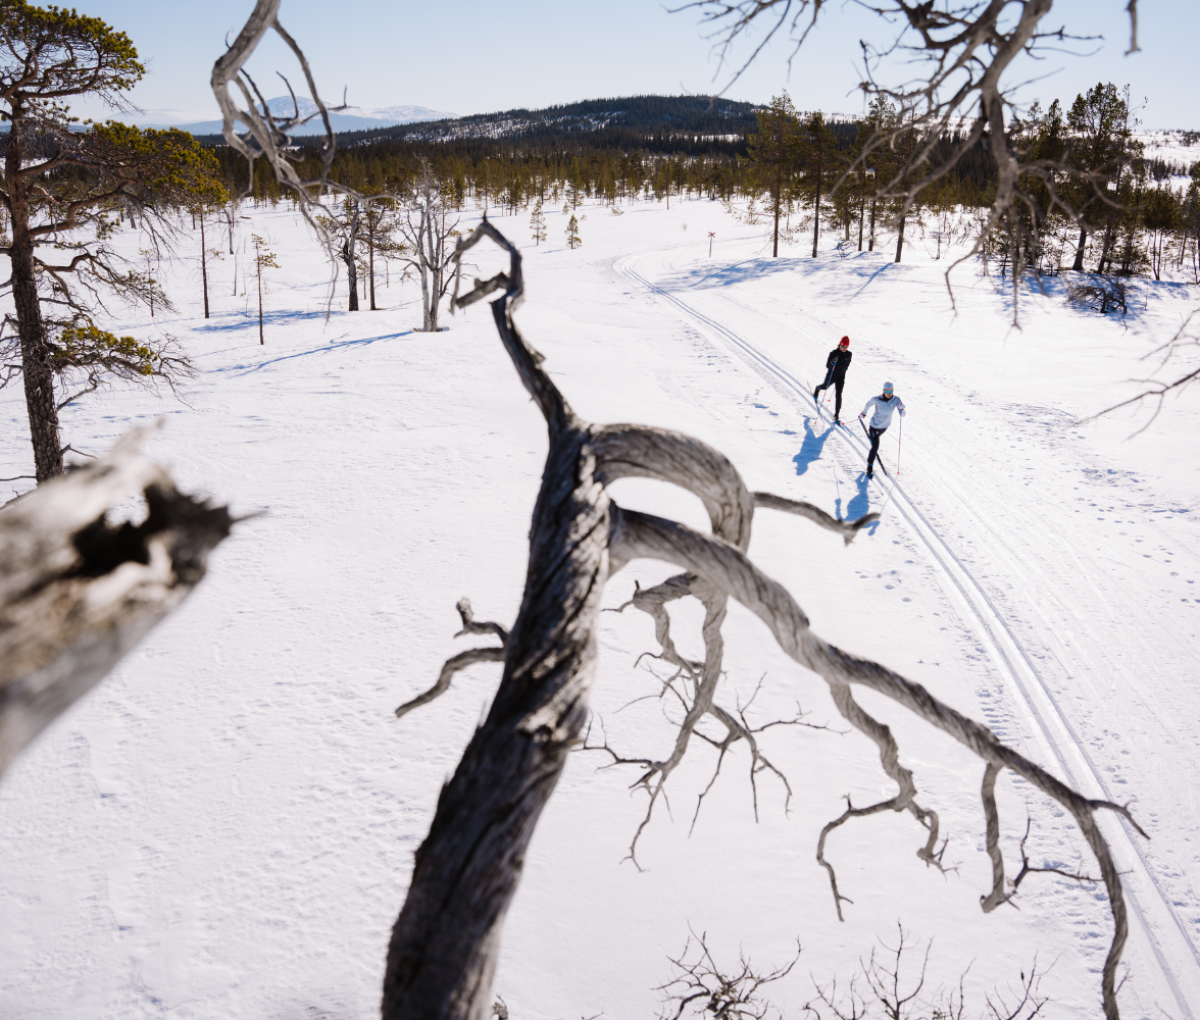 Cross Country skiing through the snow on a mountain in Jämtland Härjedalen, Sweden.